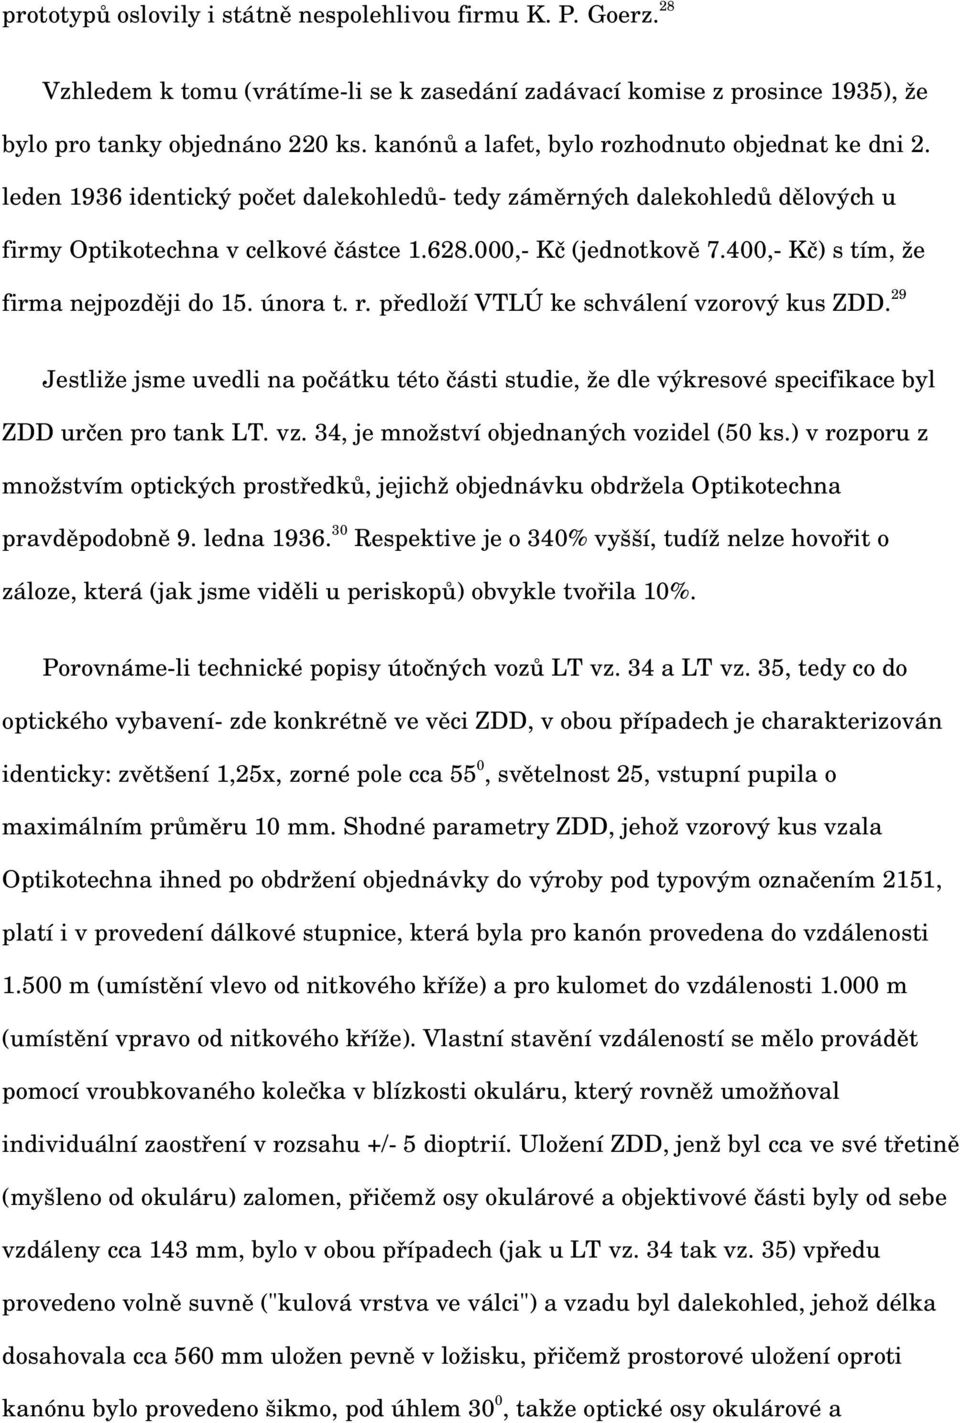 400, Kč) s tím, že firma nejpozději do 15. února t. r. předloží VTLÚ ke schválení vzorový kus ZDD.